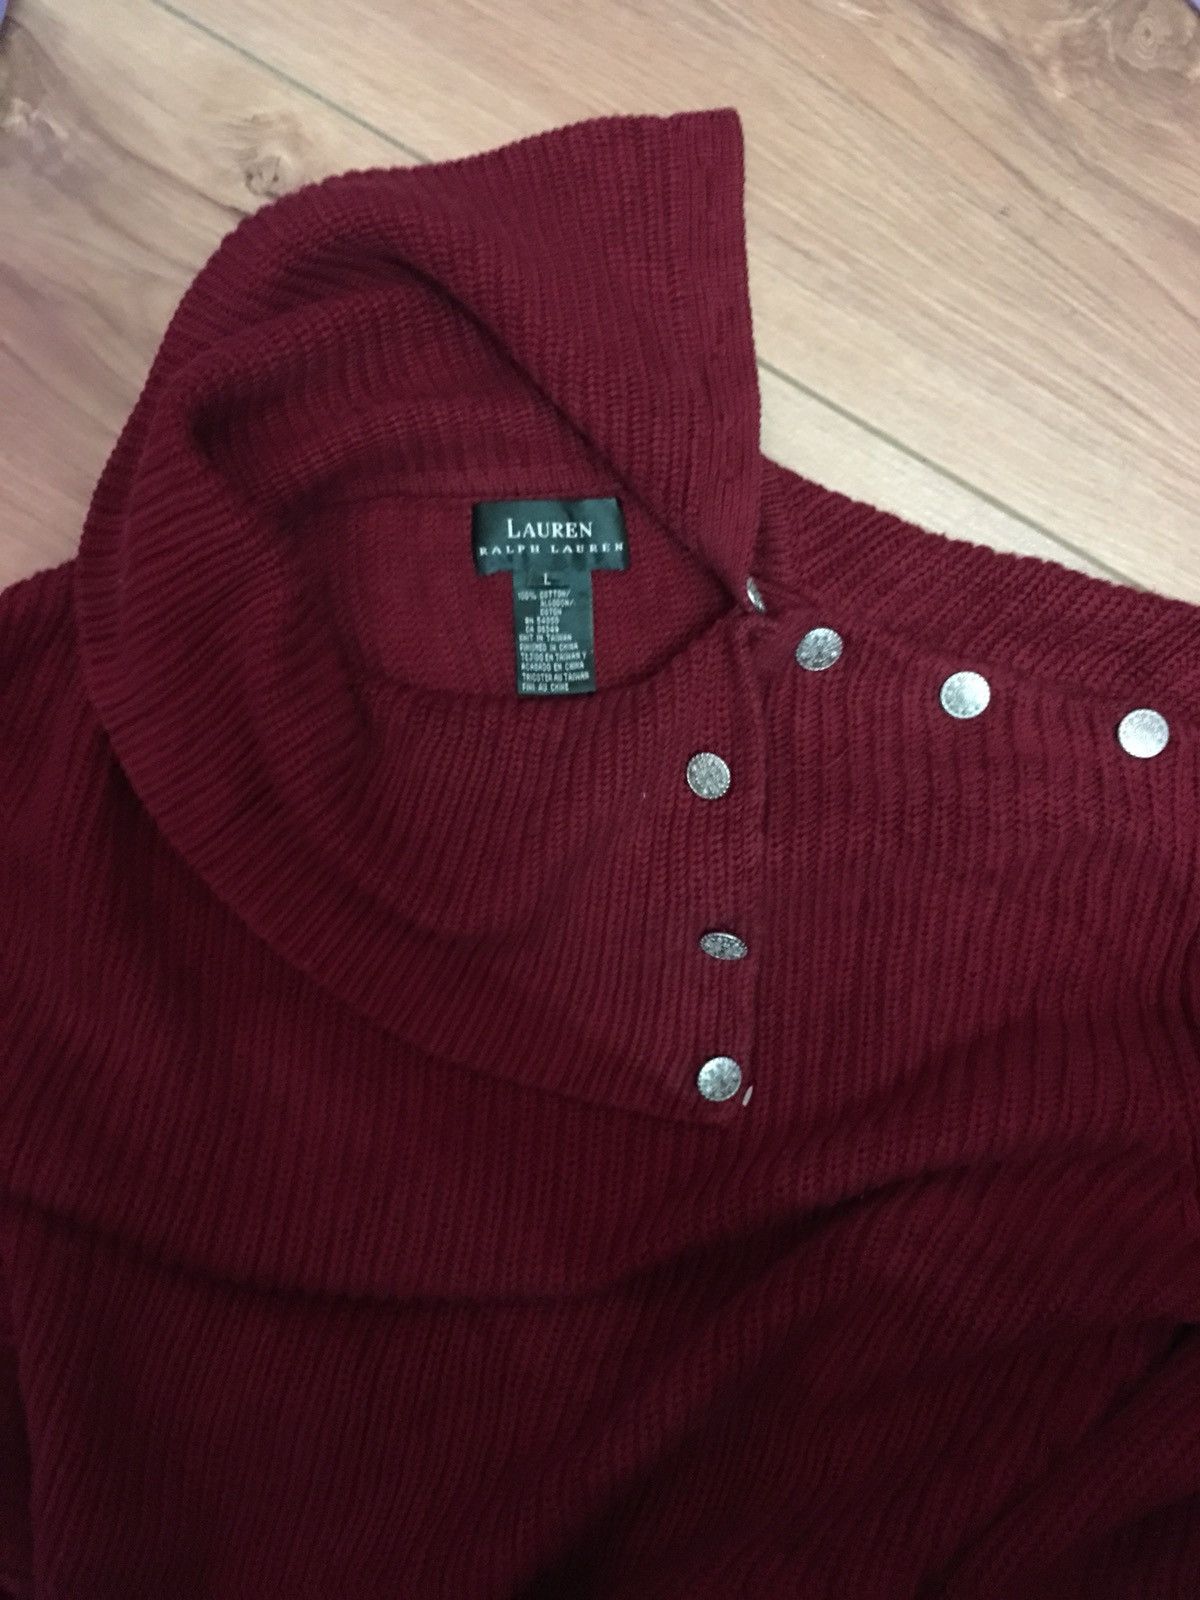 Rare Sweatshirt Ralph Lauren Nice Design - 4